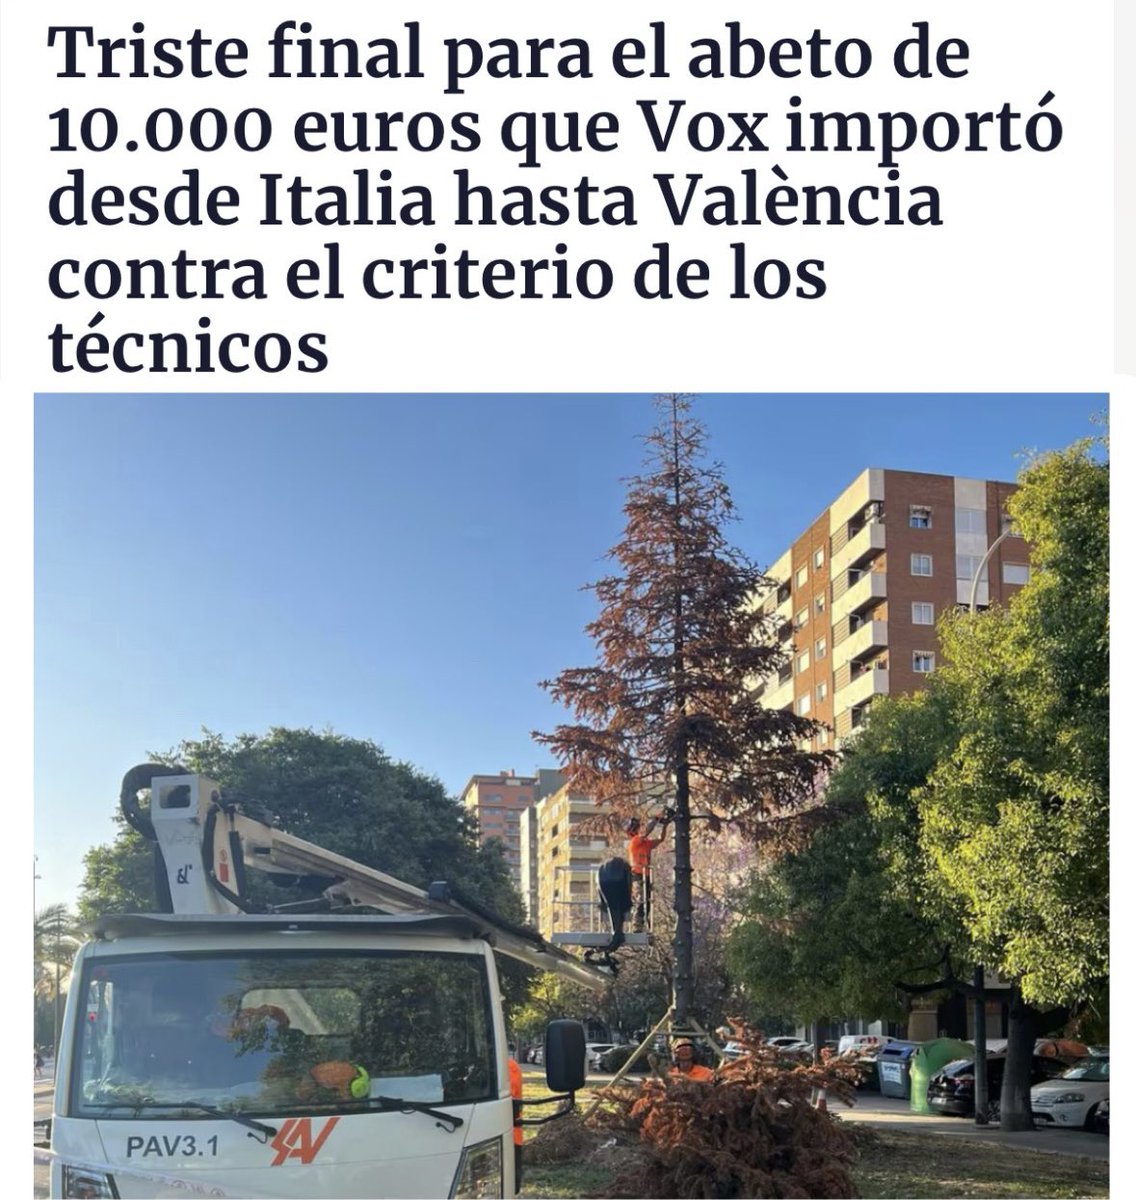 La Capitalidad Verde de María José Catalá en una imagen.

NOT A @EUGreenCapital 

cadenaser.com/comunitat-vale…